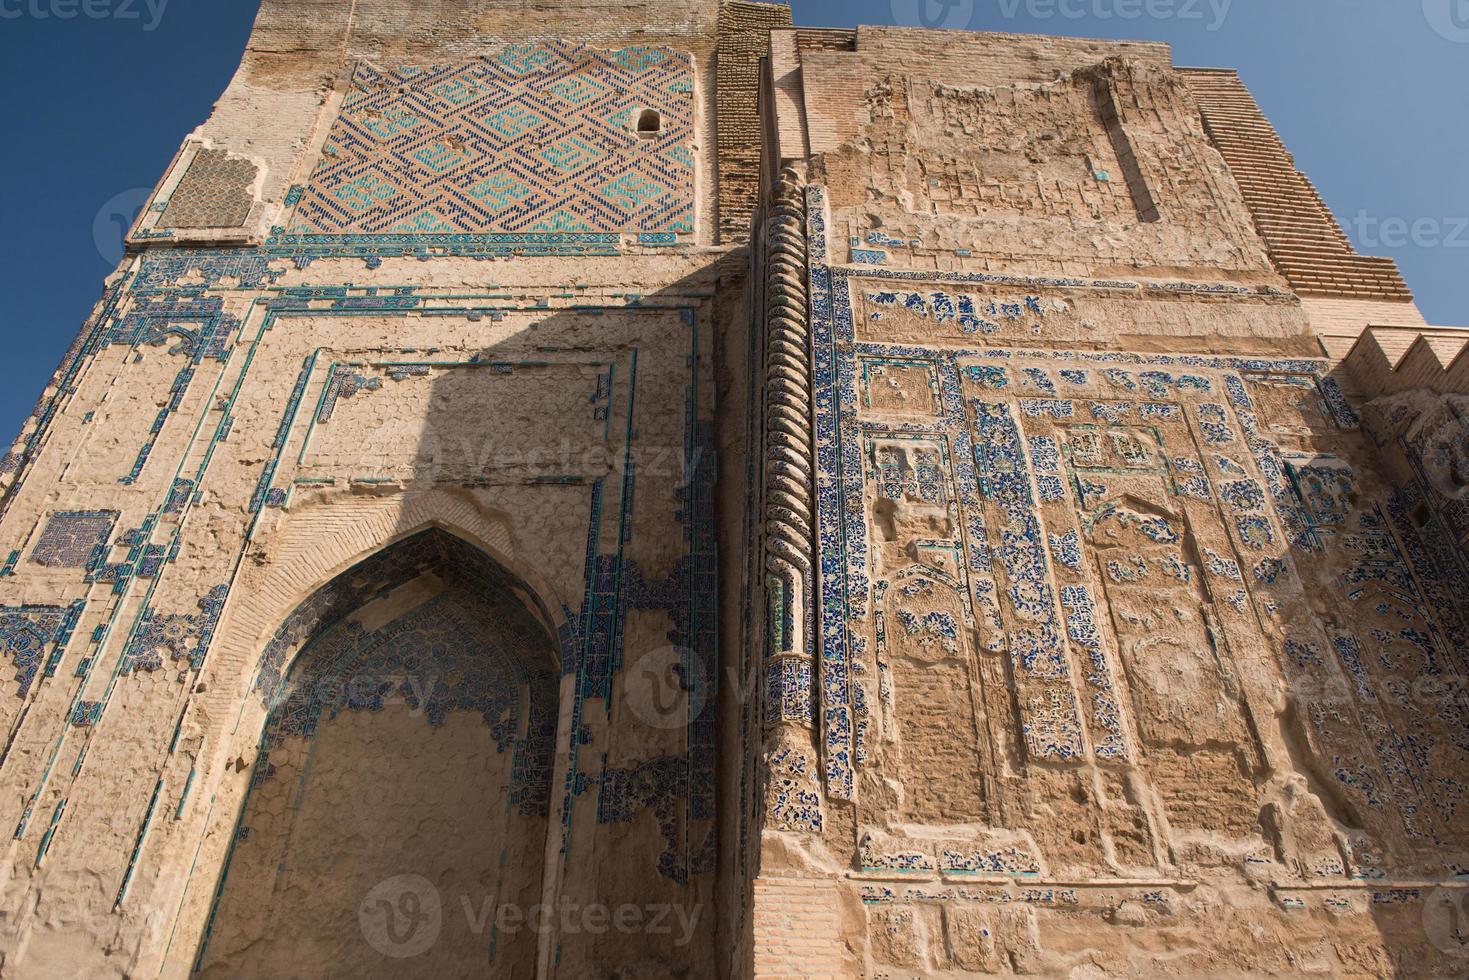 architecture d'asie centrale. grand portail ak-saray - palais blanc d'amir timur, ouzbékistan, shahrisabz. architecture ancienne d'asie centrale photo